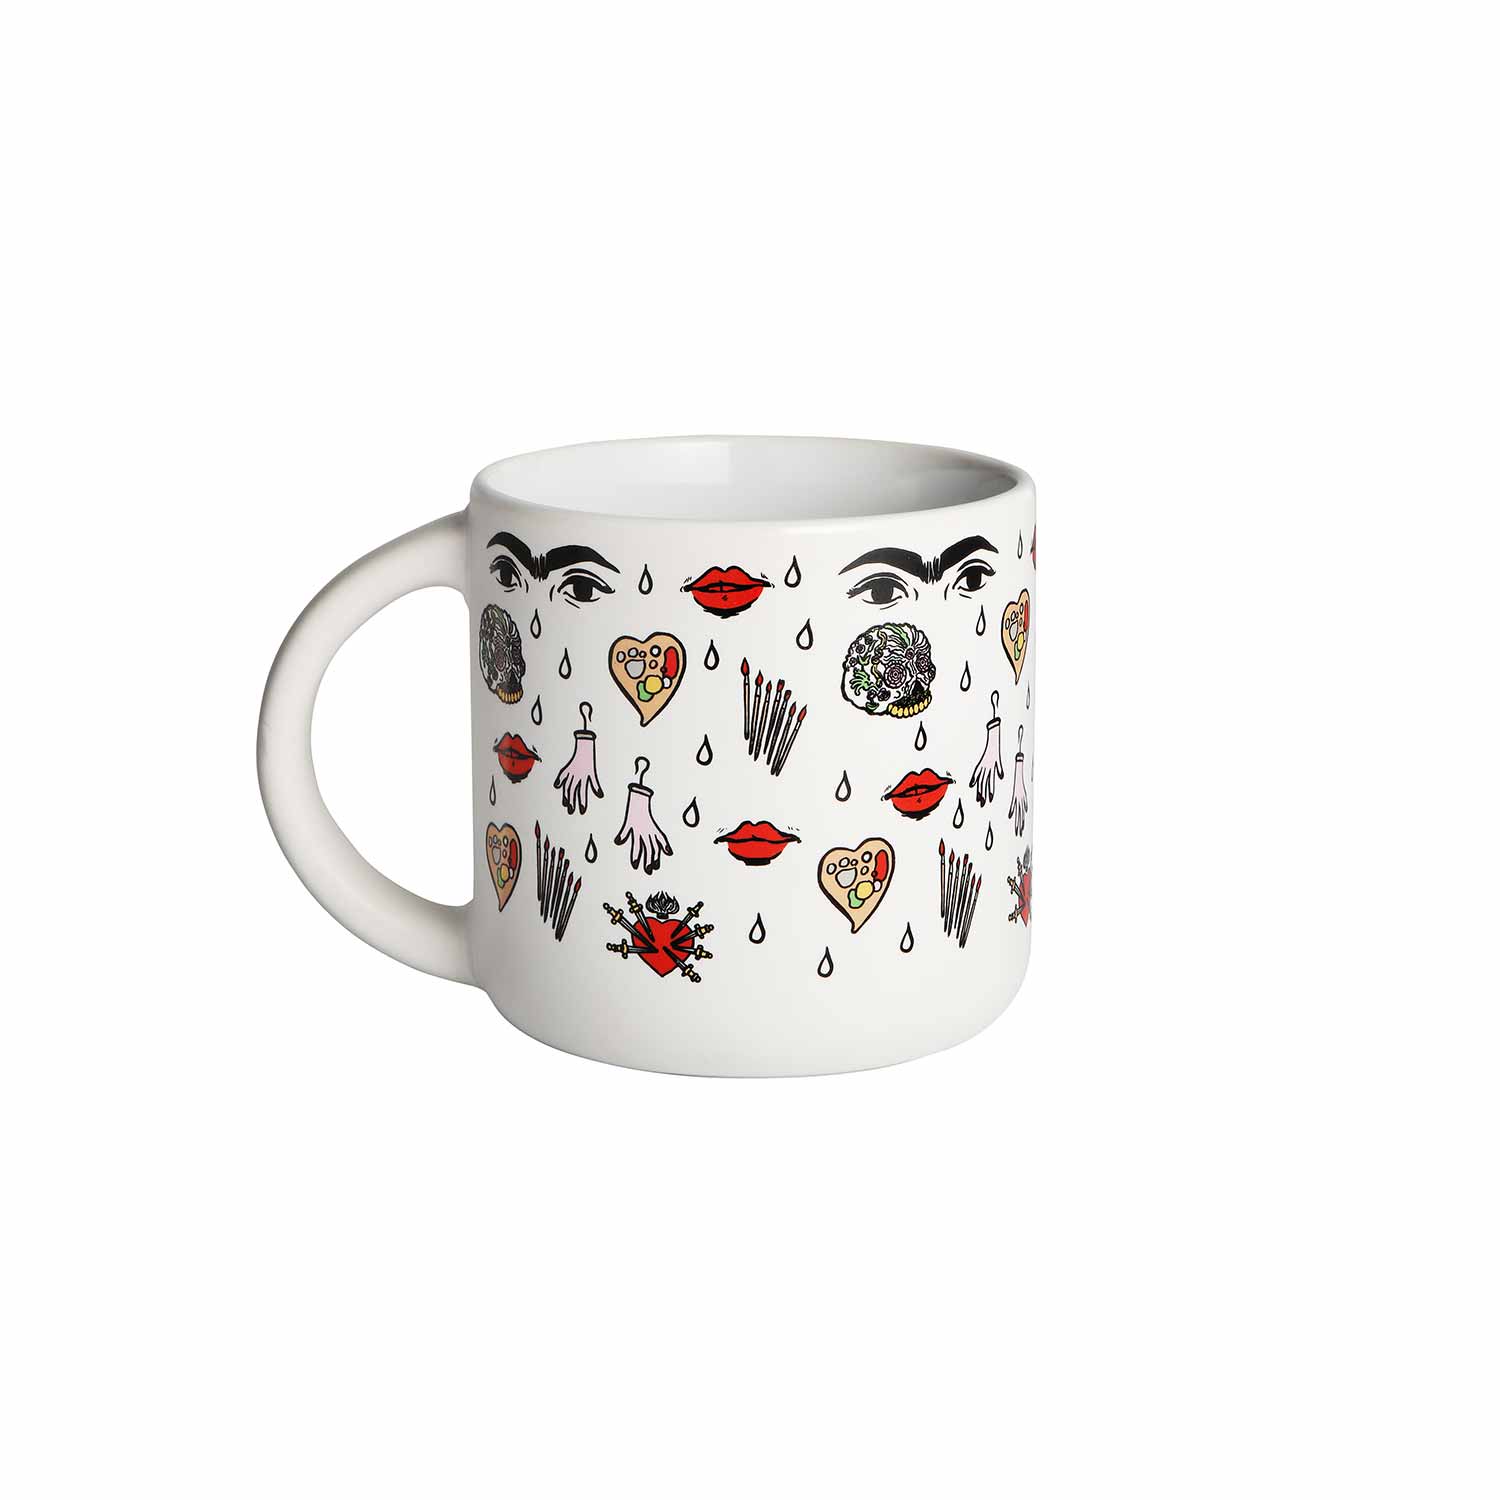 I’m Frida pattern mug